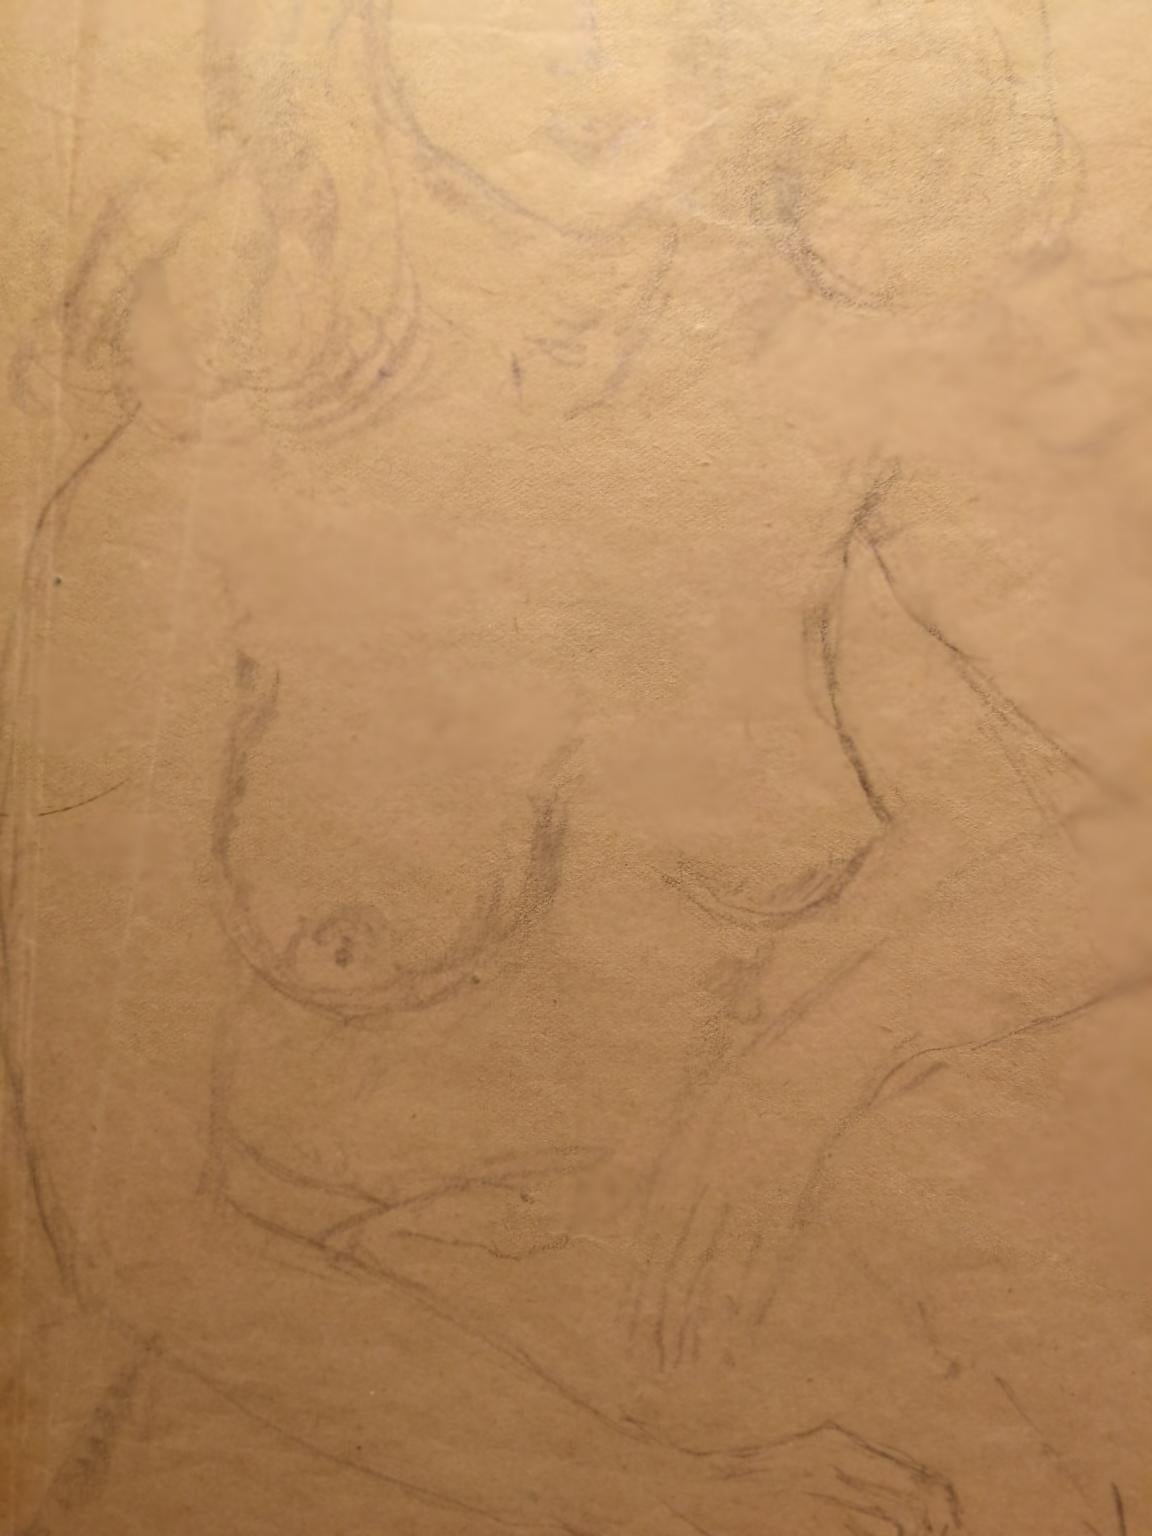 Ritratto di nudo femminile matita su carta firmato e datato For Sale 2